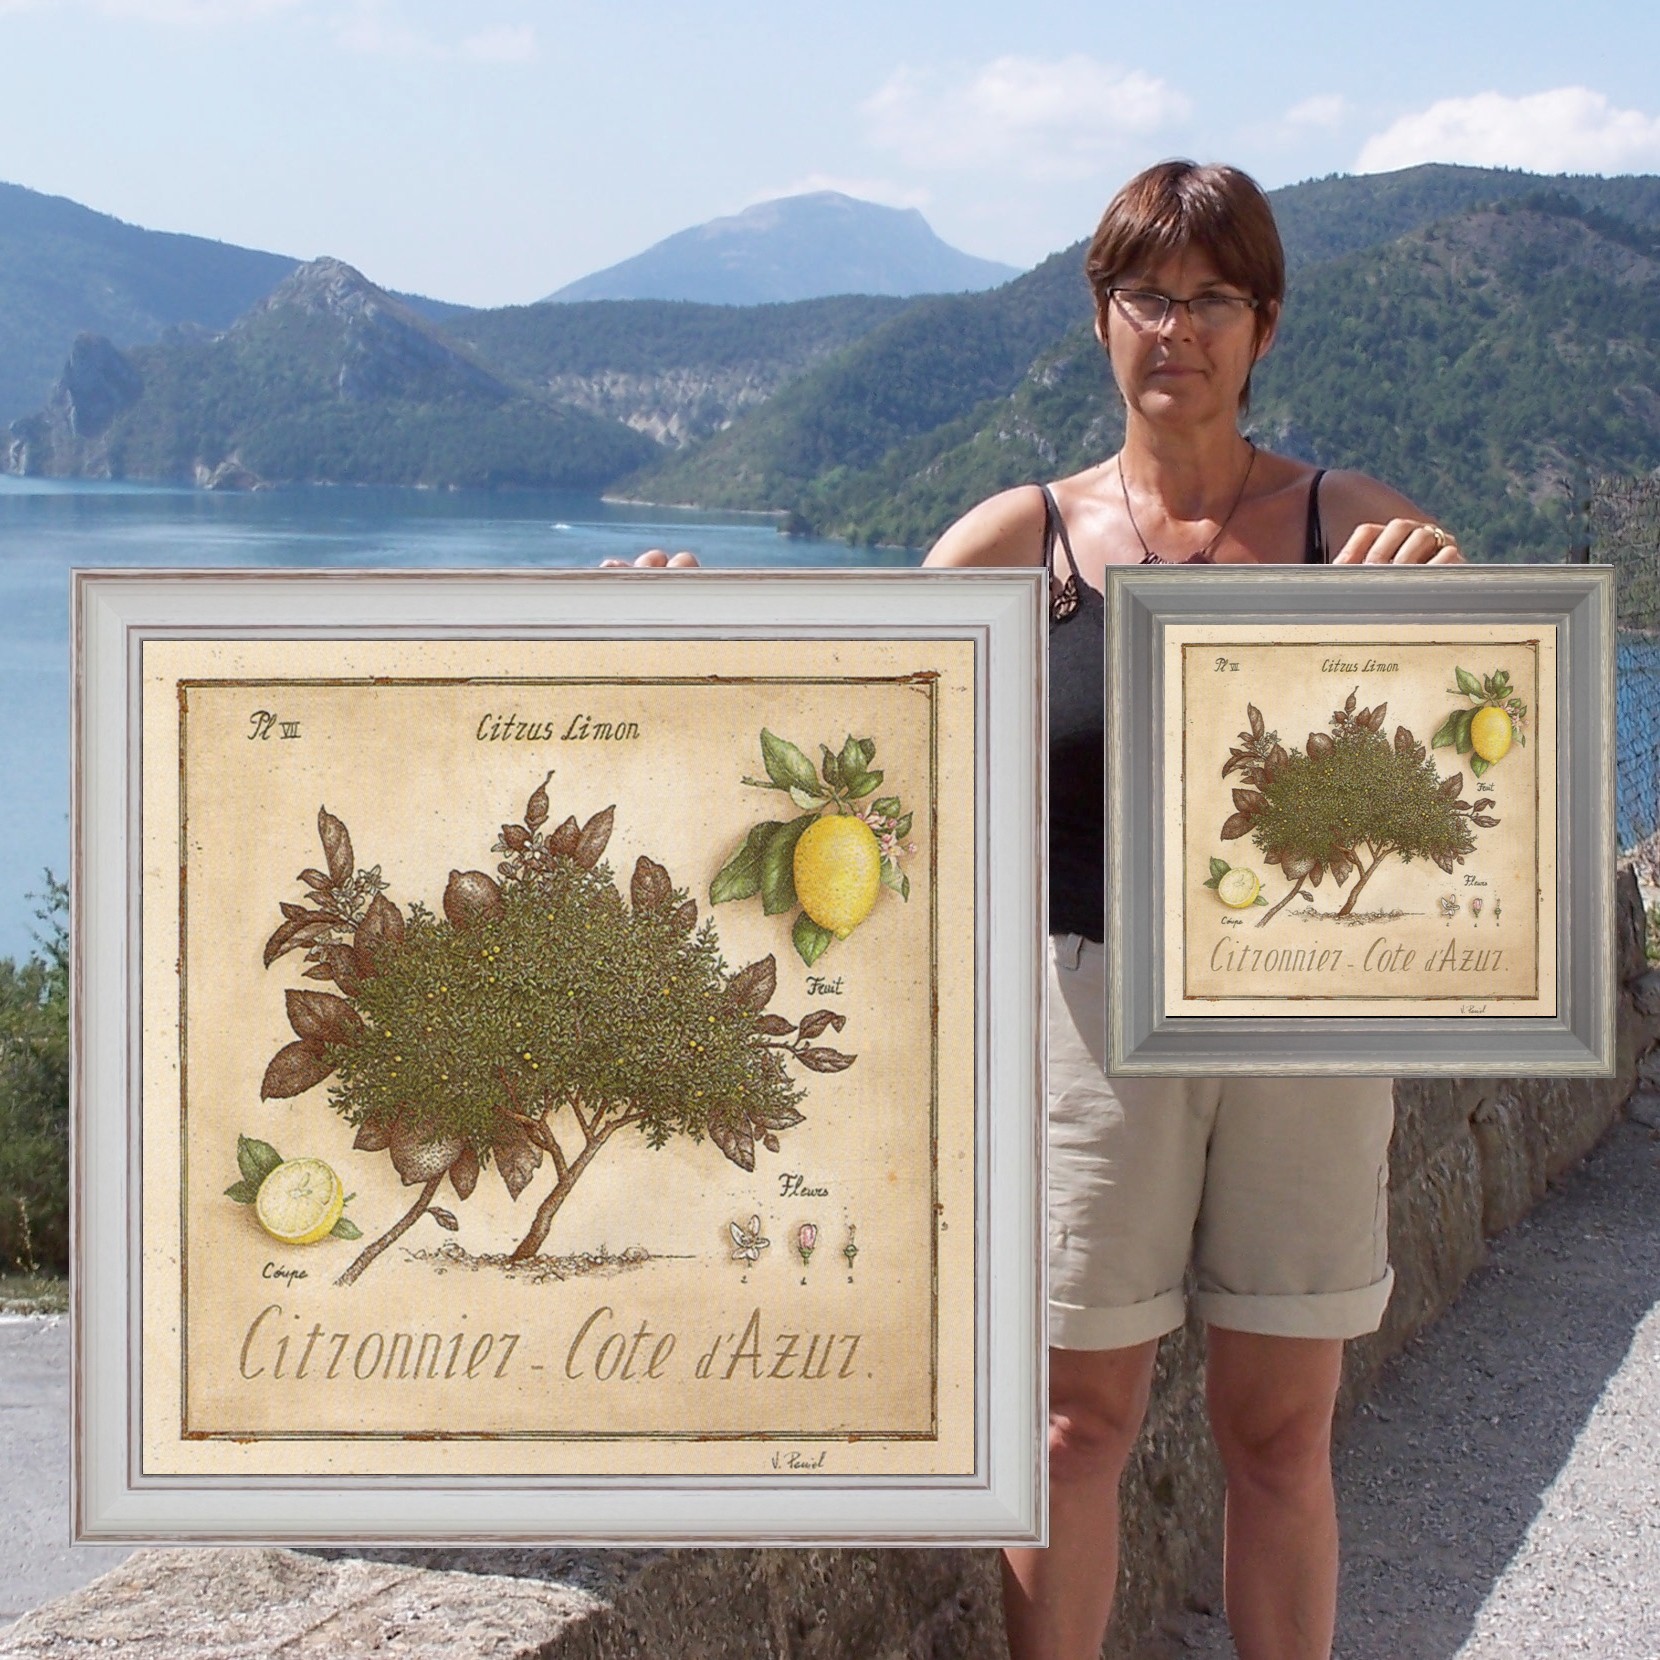 Citronnier Côte d'Azur - comparaison des 2 formats